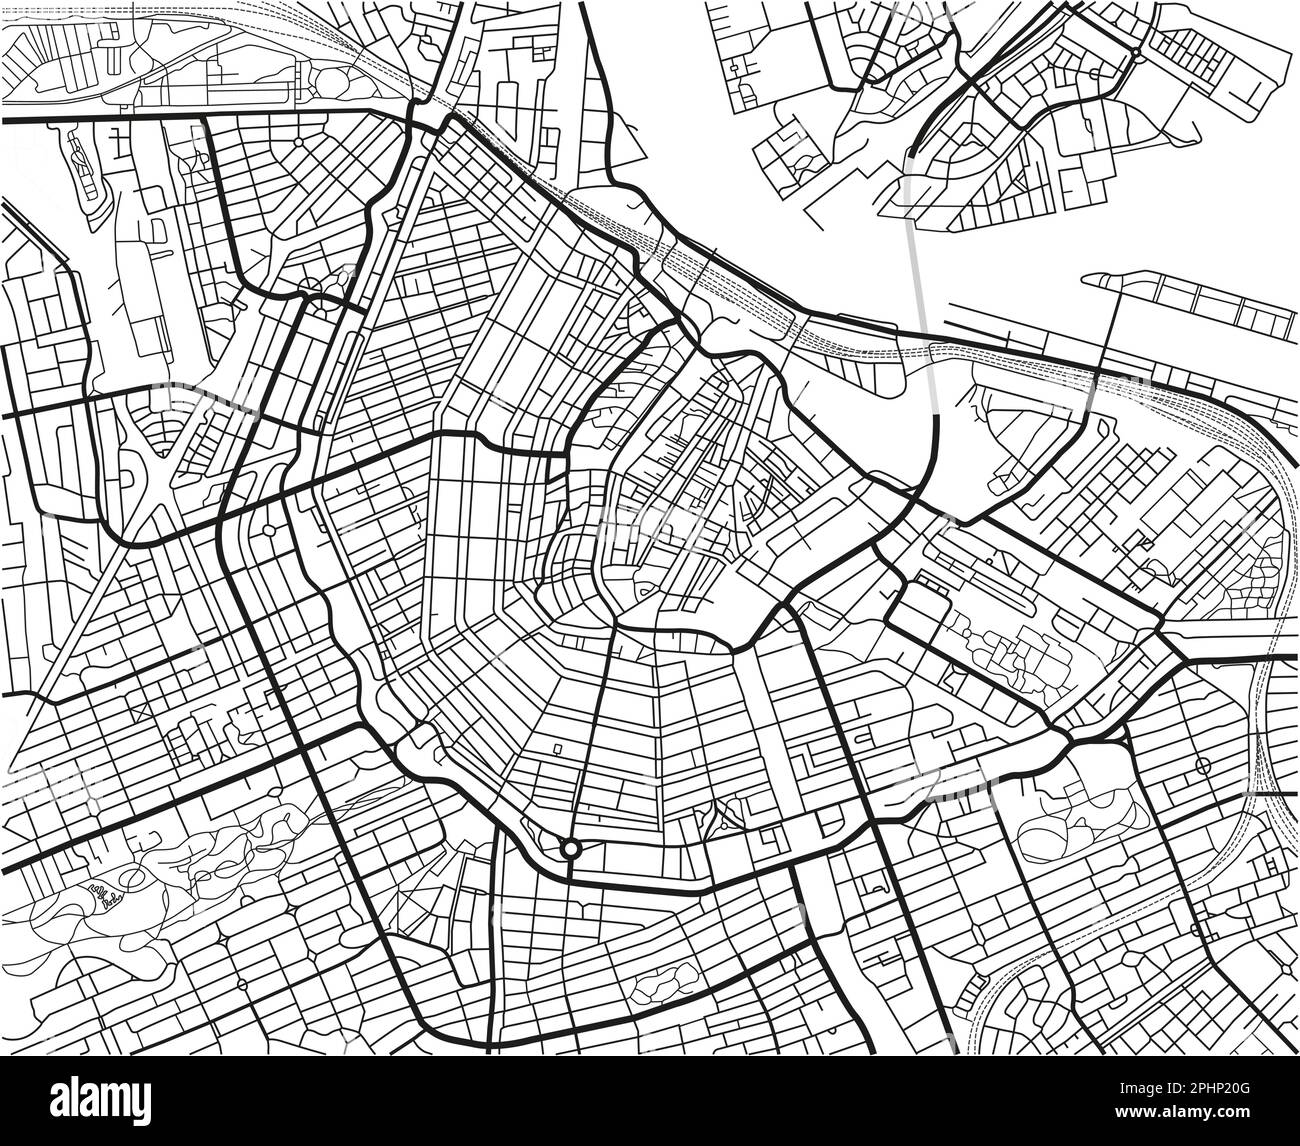 Mappa vettoriale in bianco e nero della città di Amsterdam con strati separati ben organizzati. Illustrazione Vettoriale